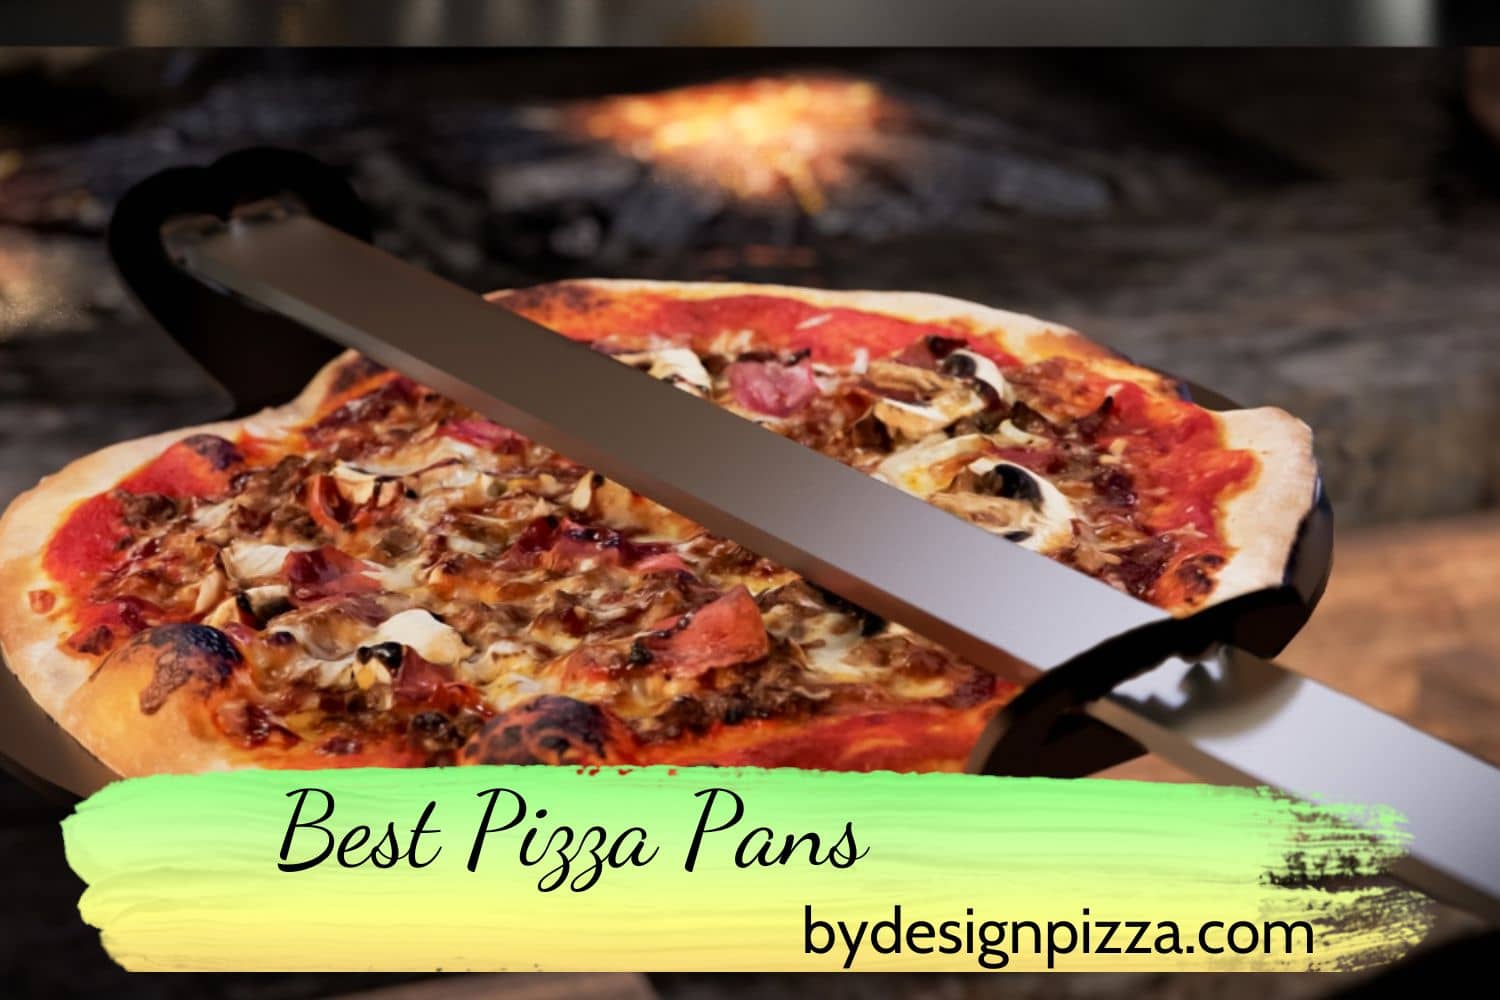 Best Pizza Pans